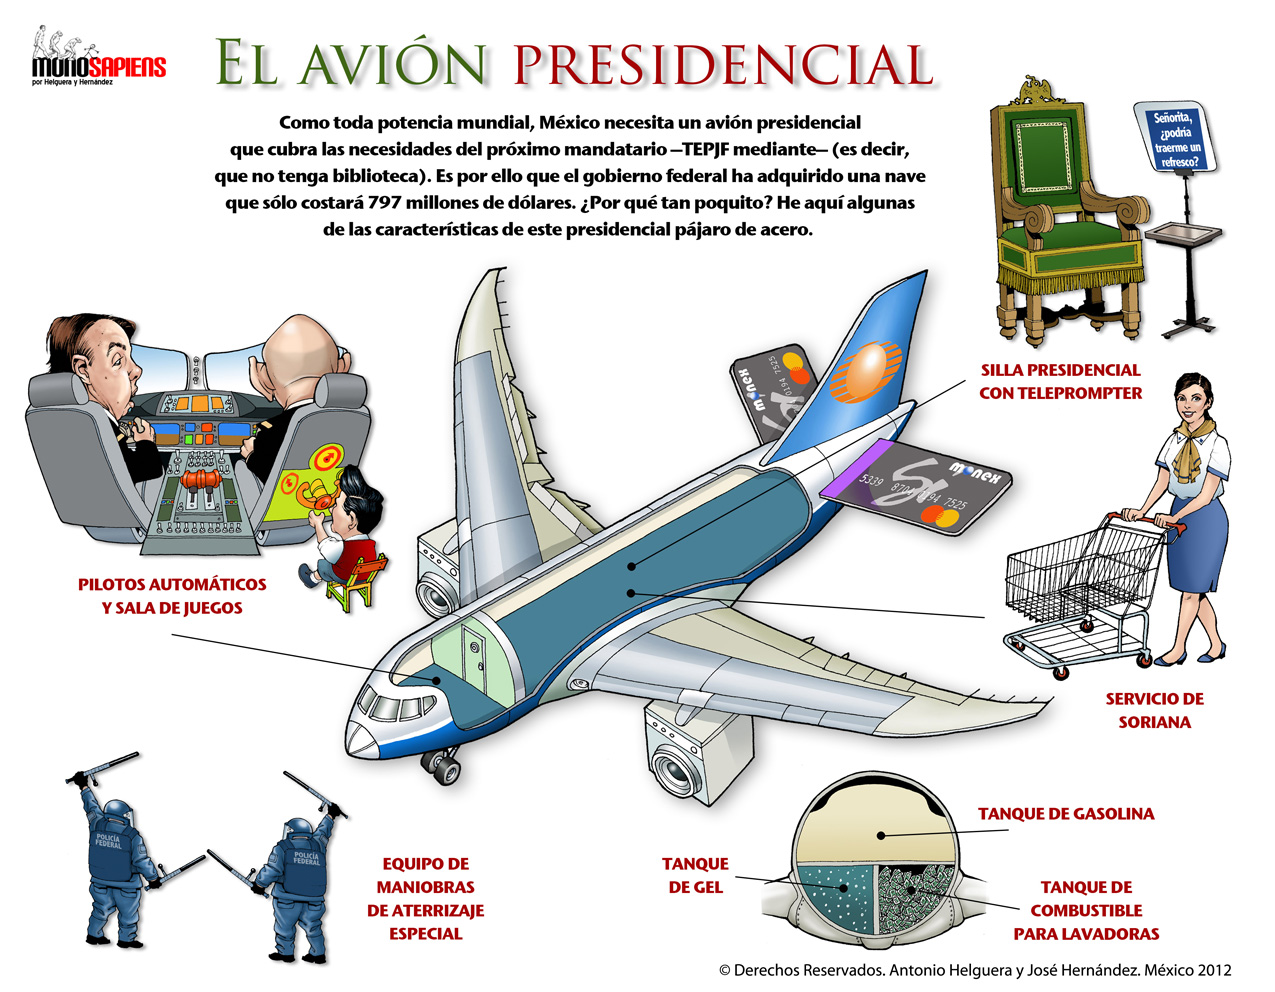 El avión presidencial